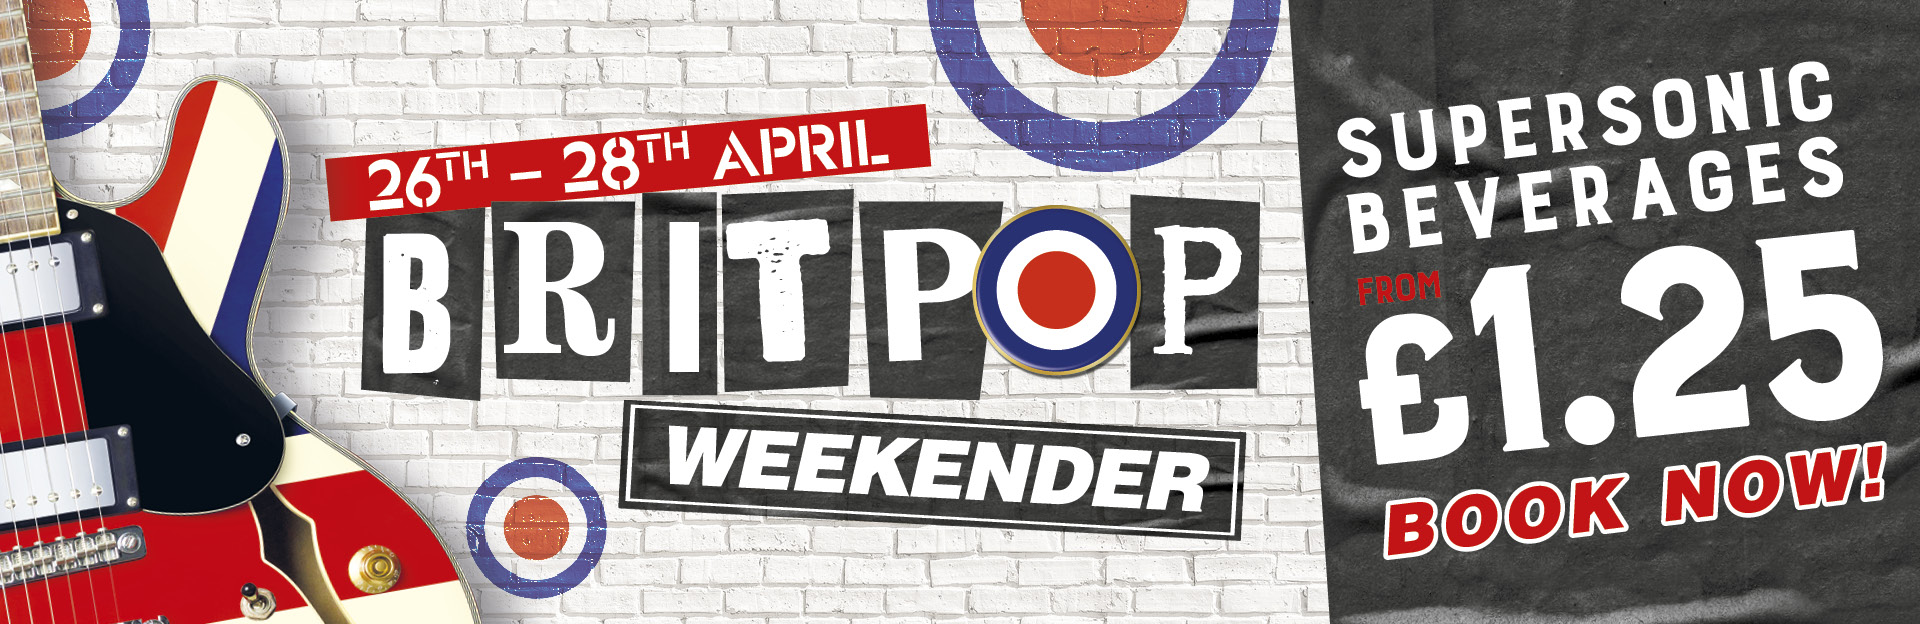 Britpop Weekender at The Windsor